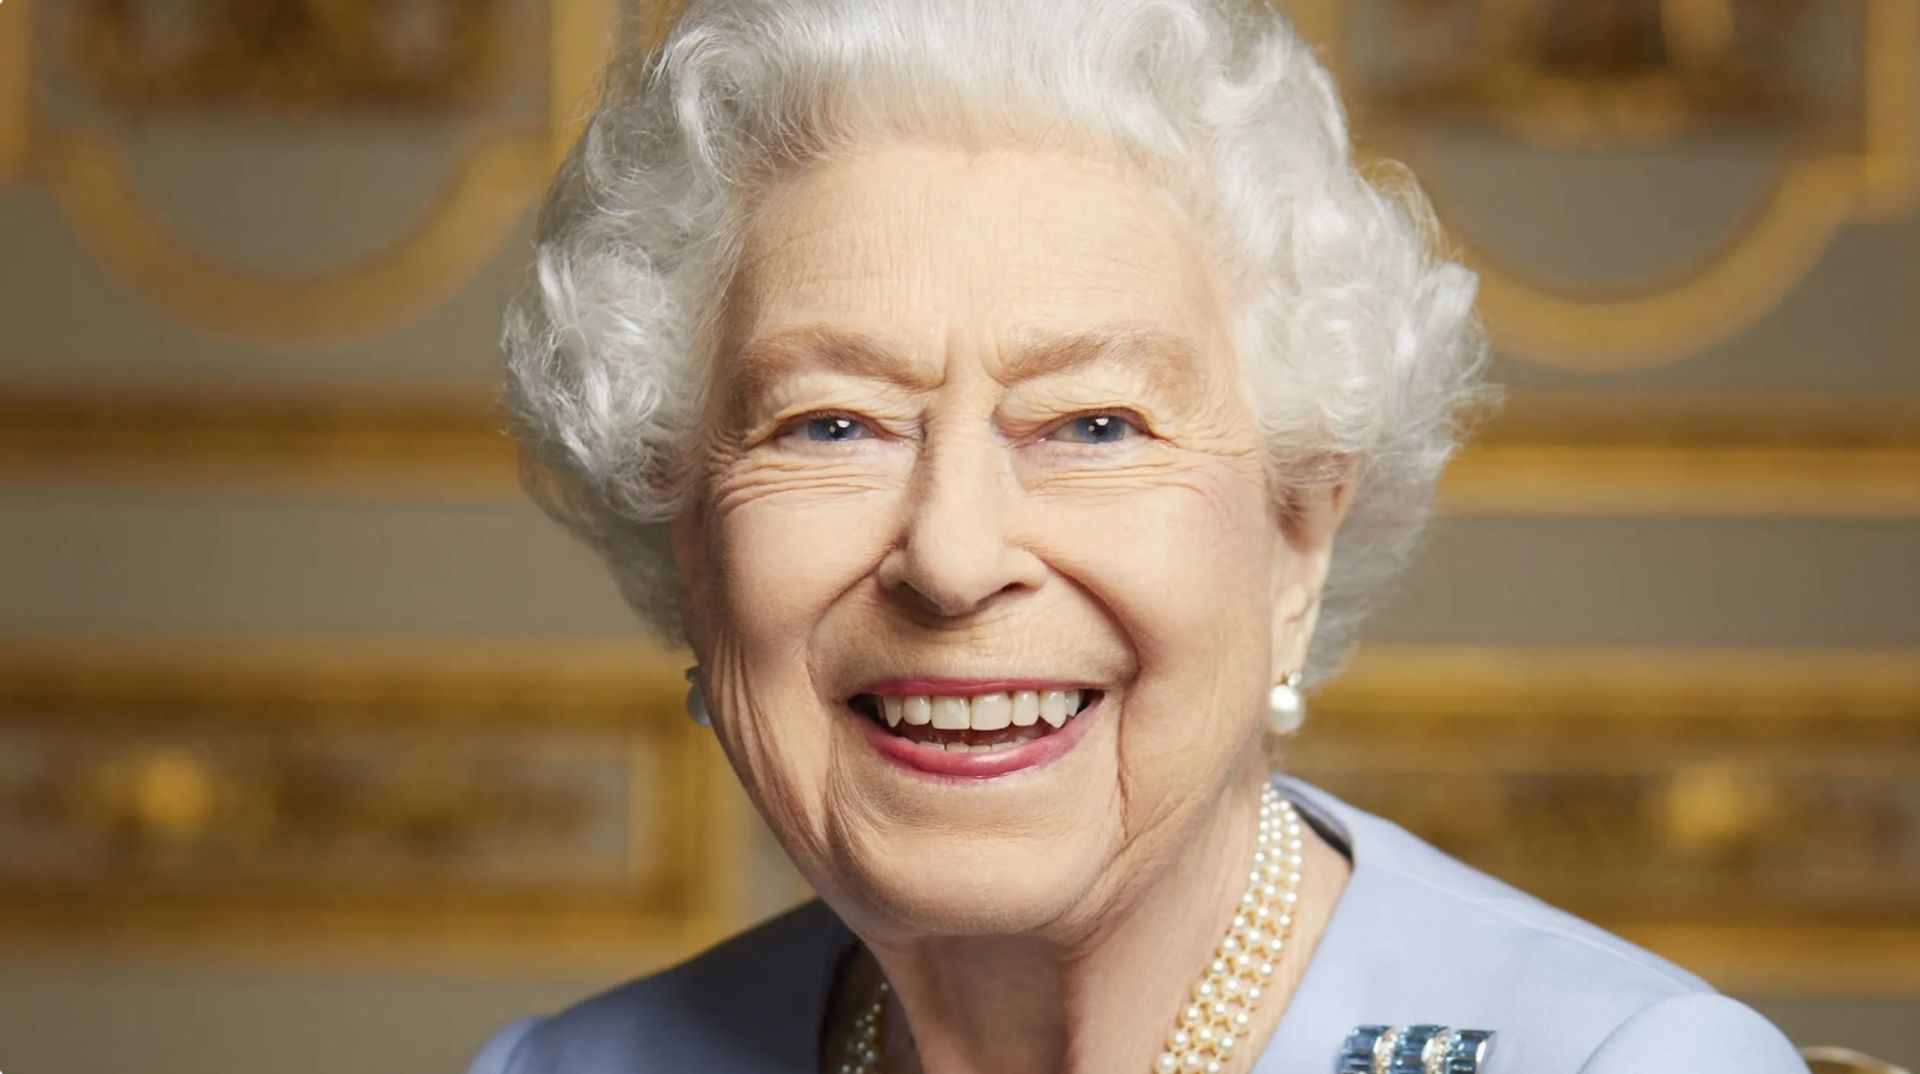 Koninklijke familie deelt privéfoto Elizabeth na uitvaat